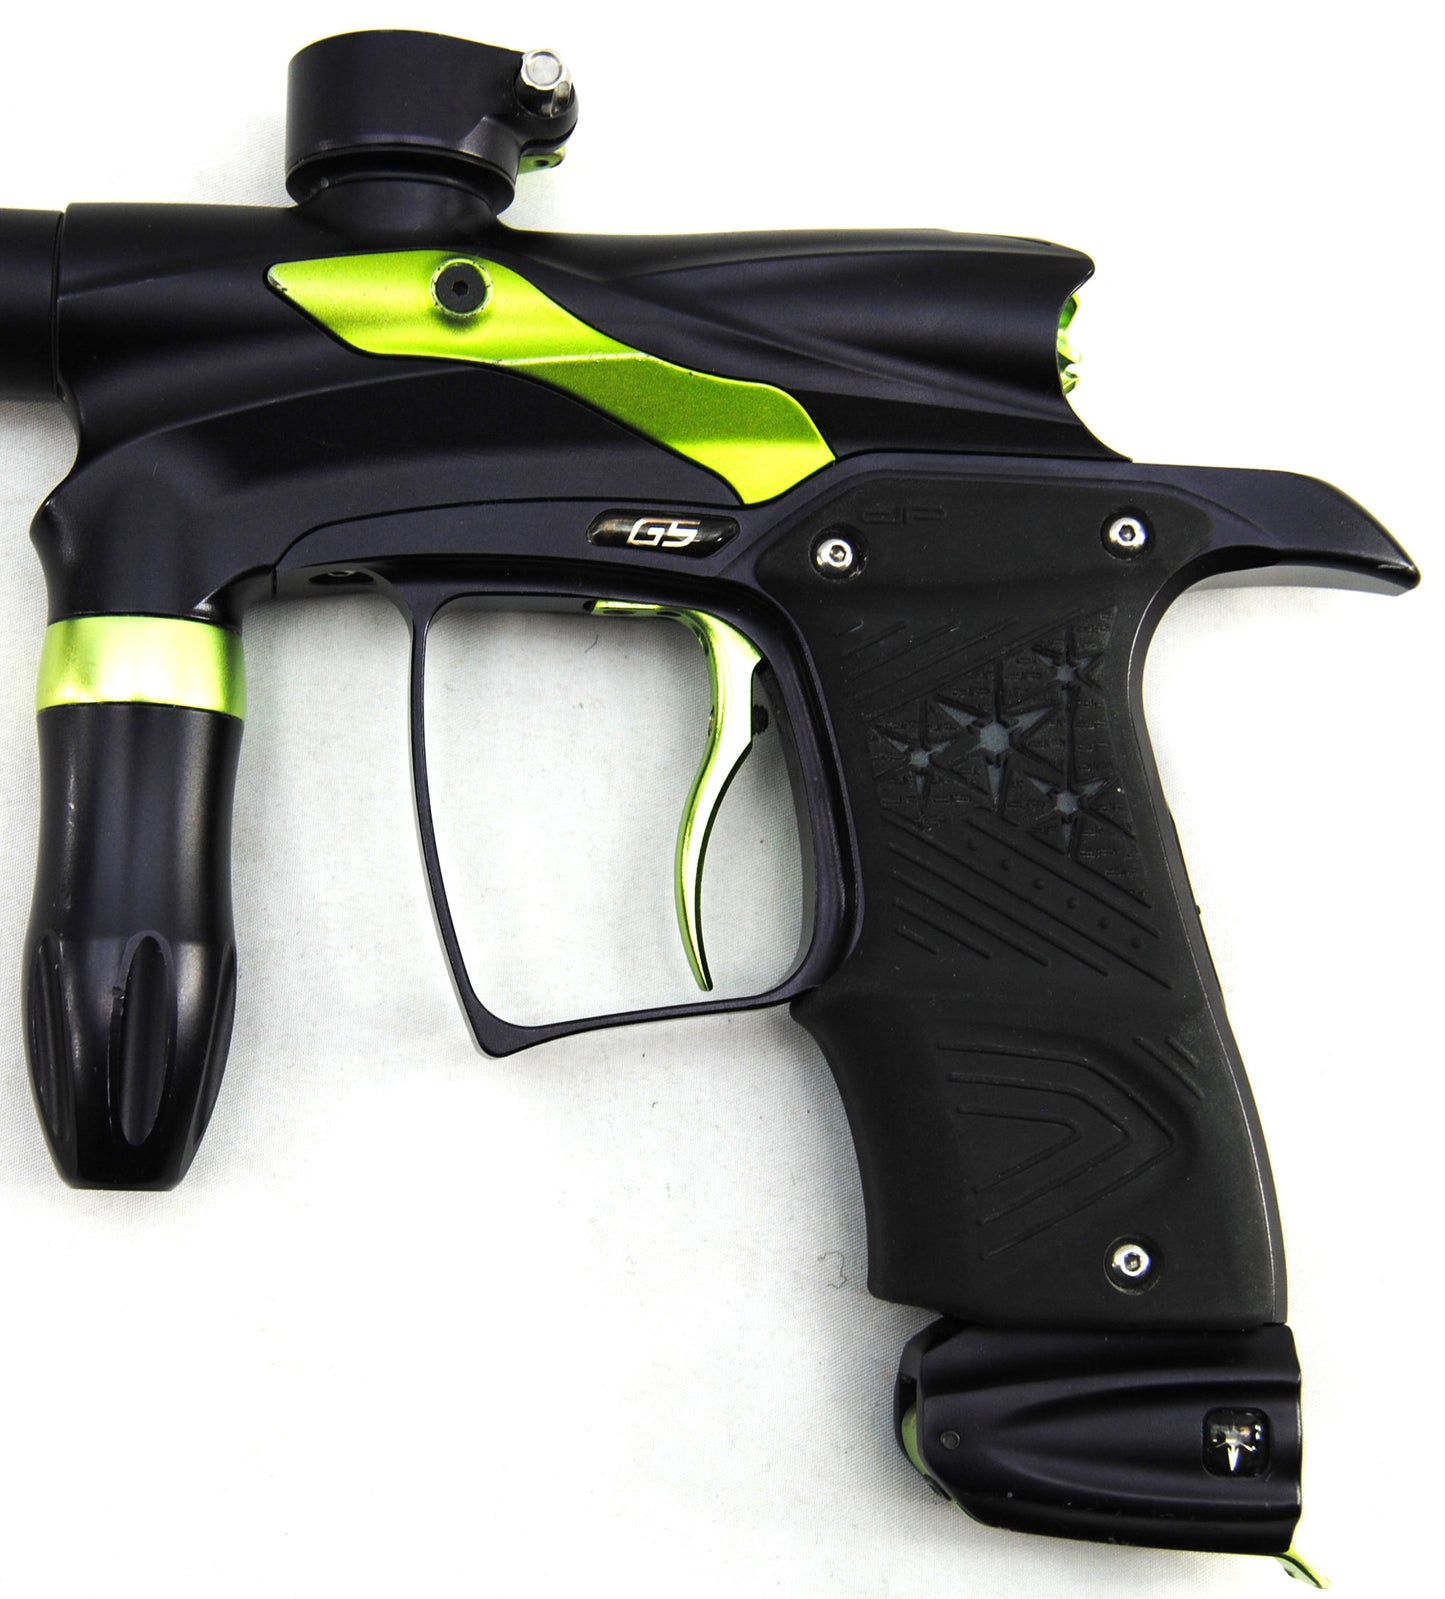 Used Dangerous Power G5 Paintball Gun - Black/Lime